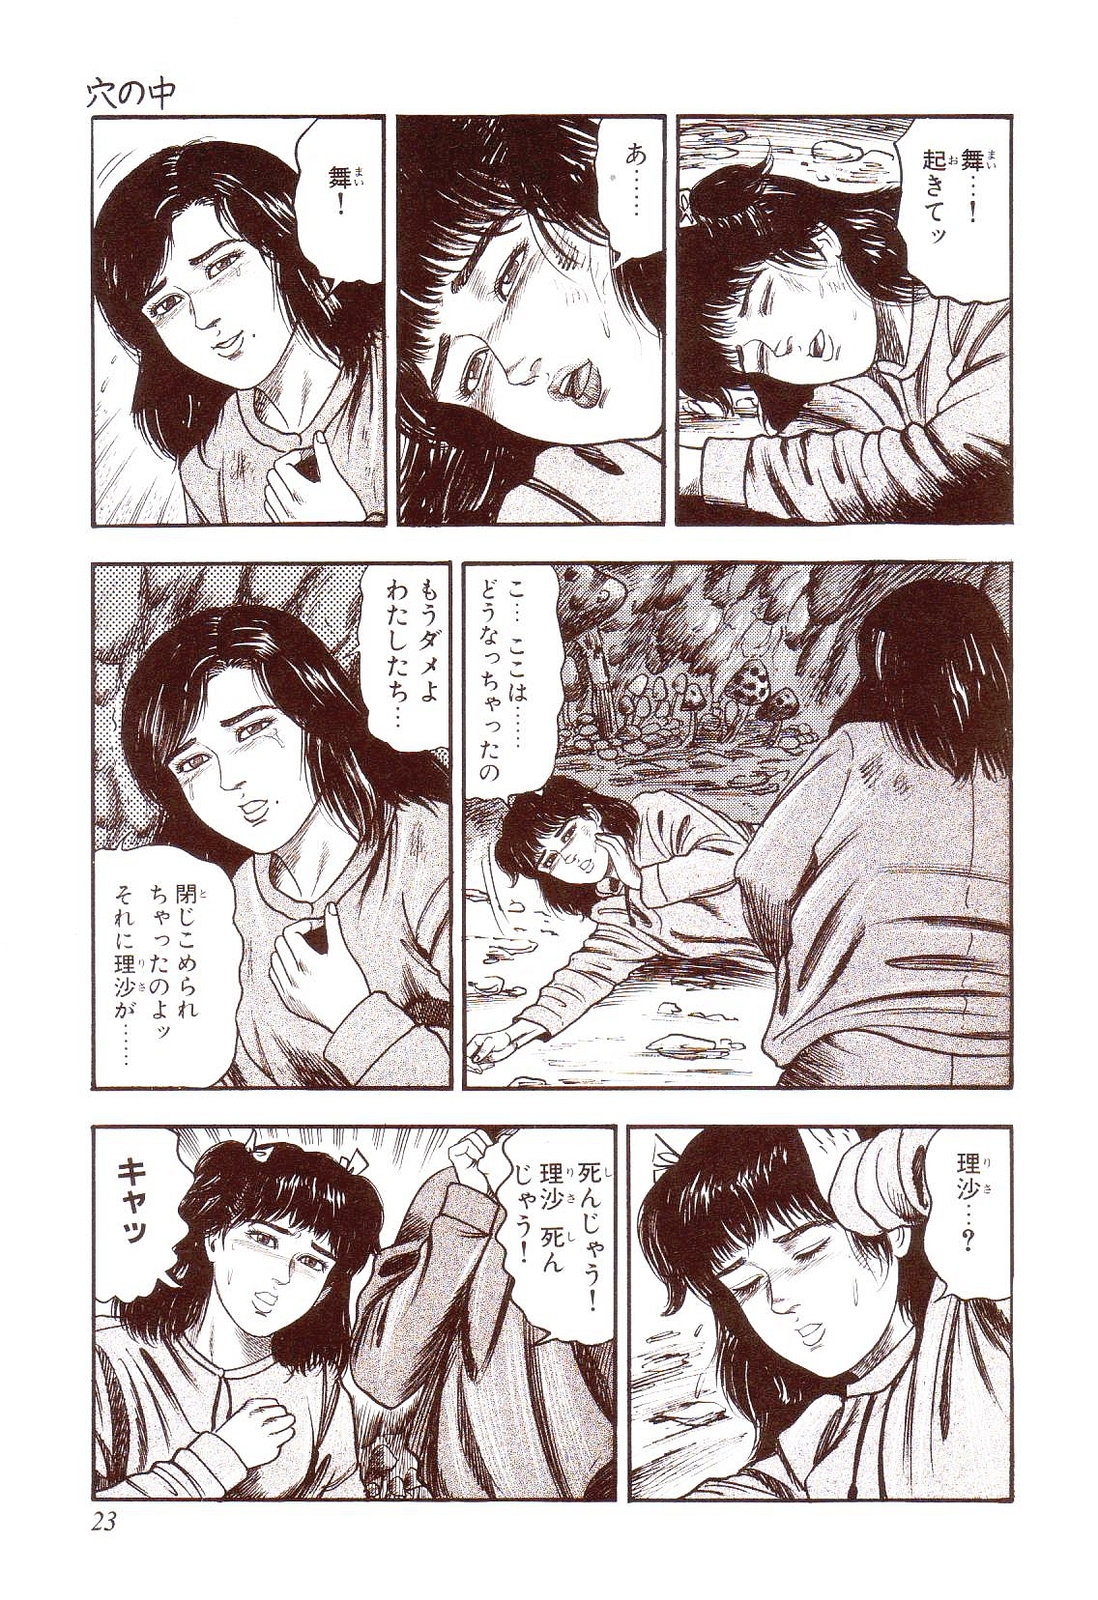 [Sanjou Tomomi] Inu ni Naritai -kyoufu manga shugyoku sakuhinshiyuu- 27